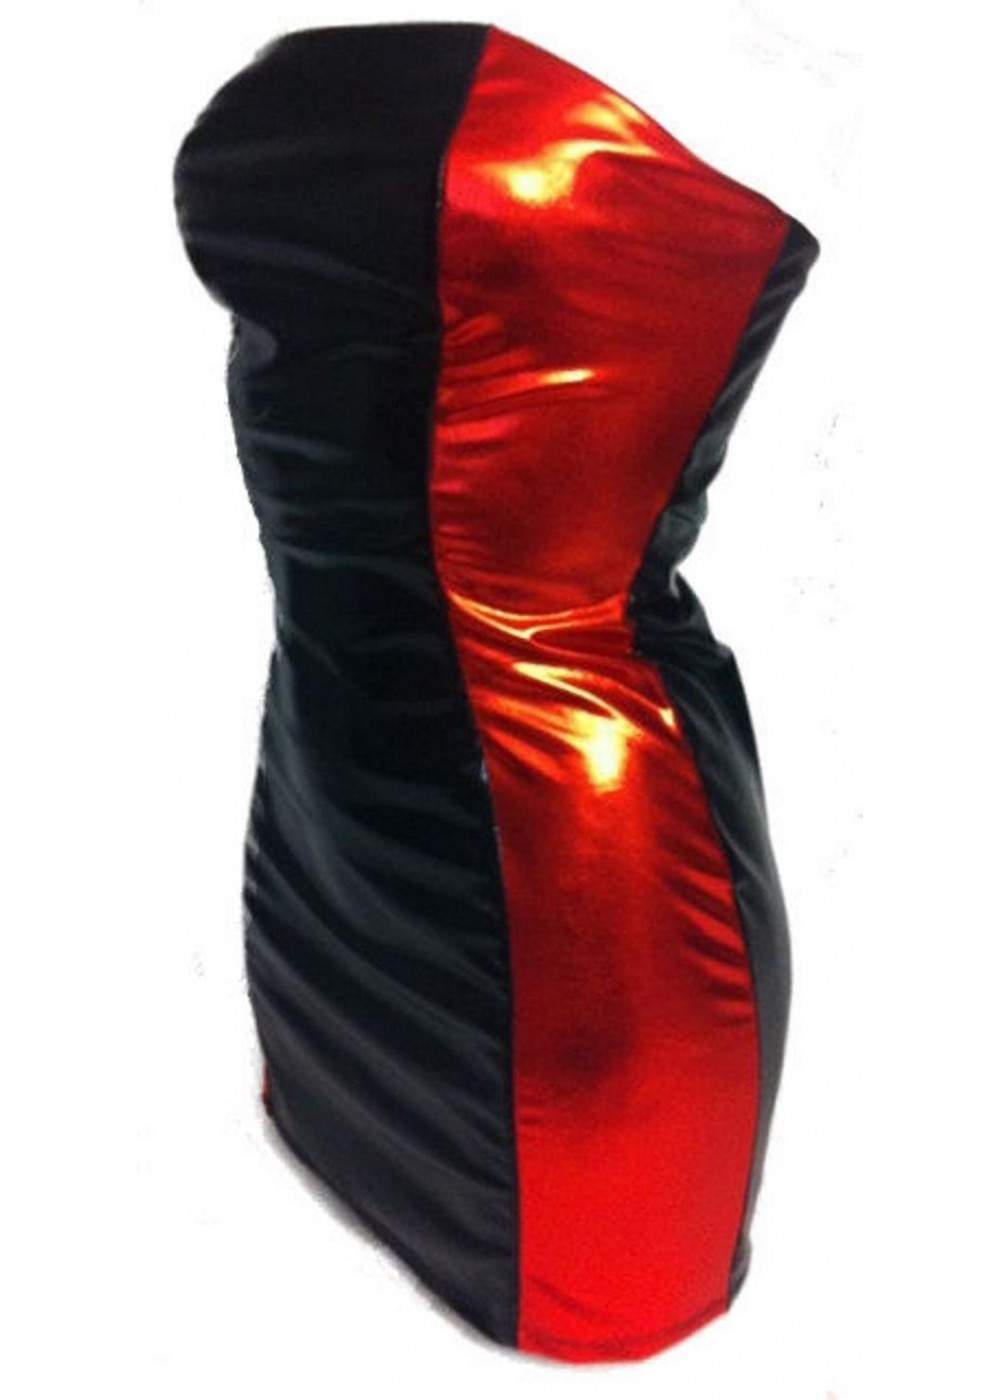 BANDEAU-Kleid schwarz rot elastisch ab 35,00 € - 